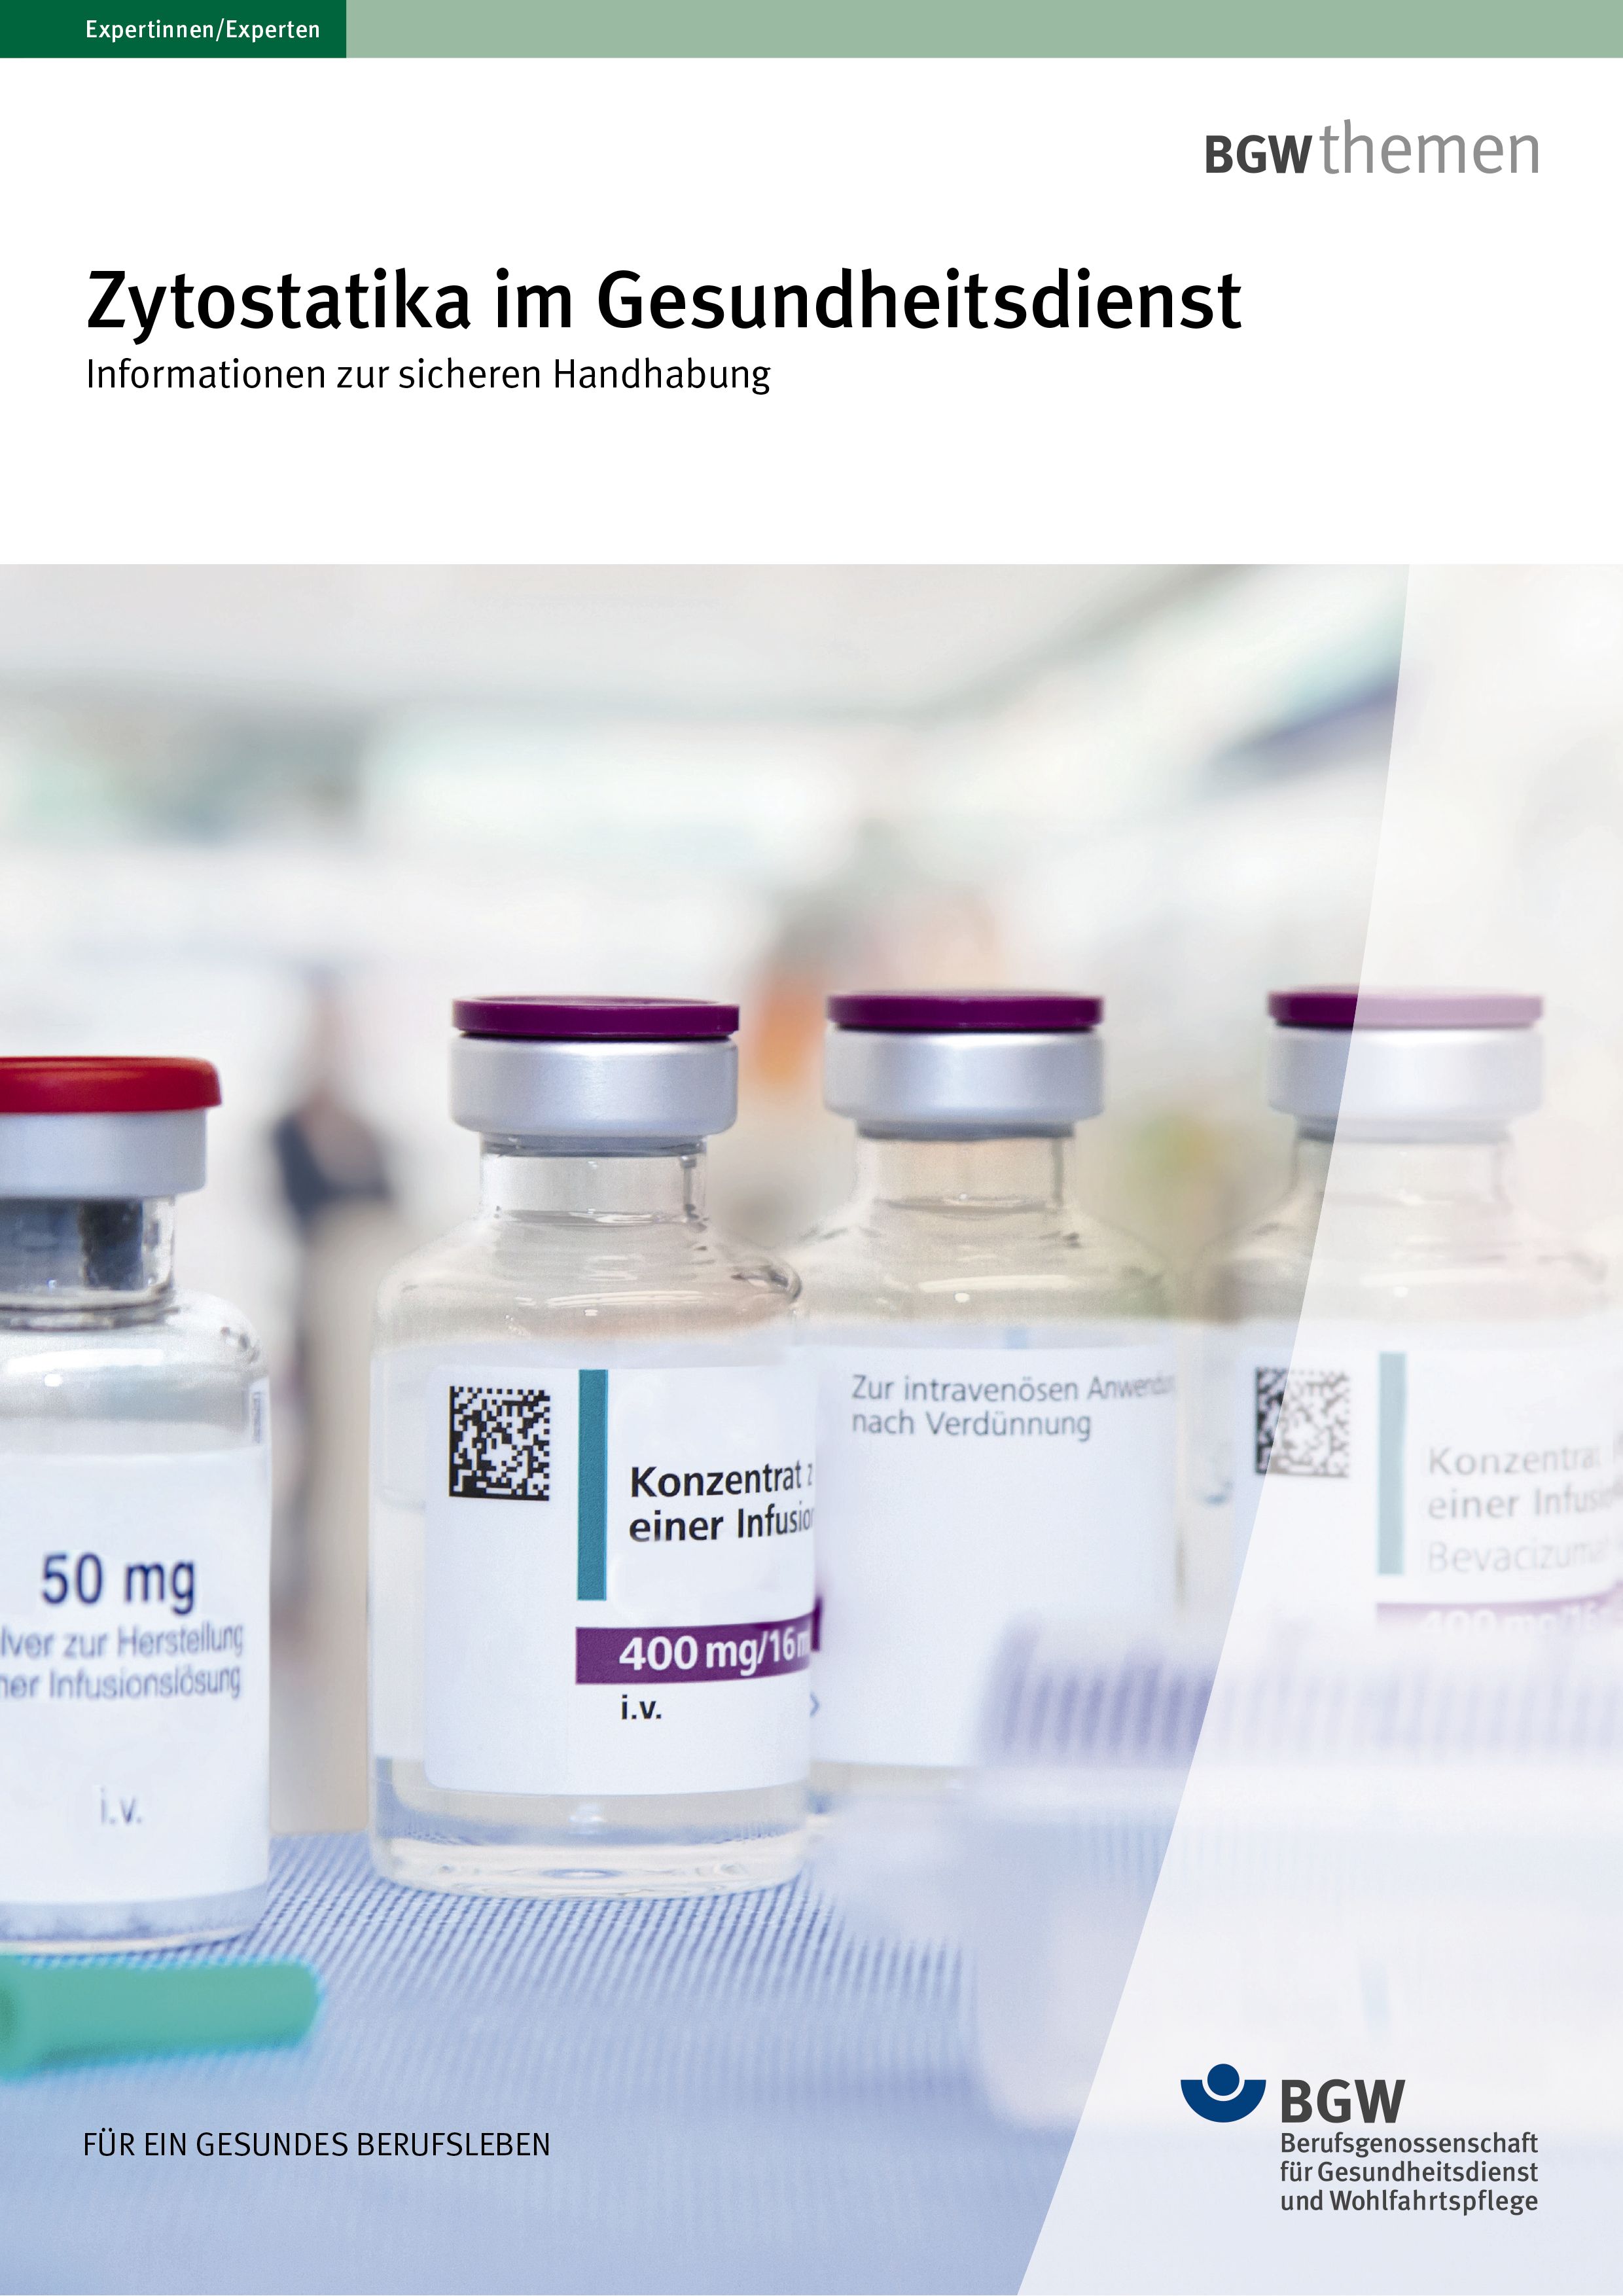 Titel: Zytostatika im Gesundheitsdienst - Informationen zur sicheren Handhabung - Vier Flaschen mit Injektionslösung